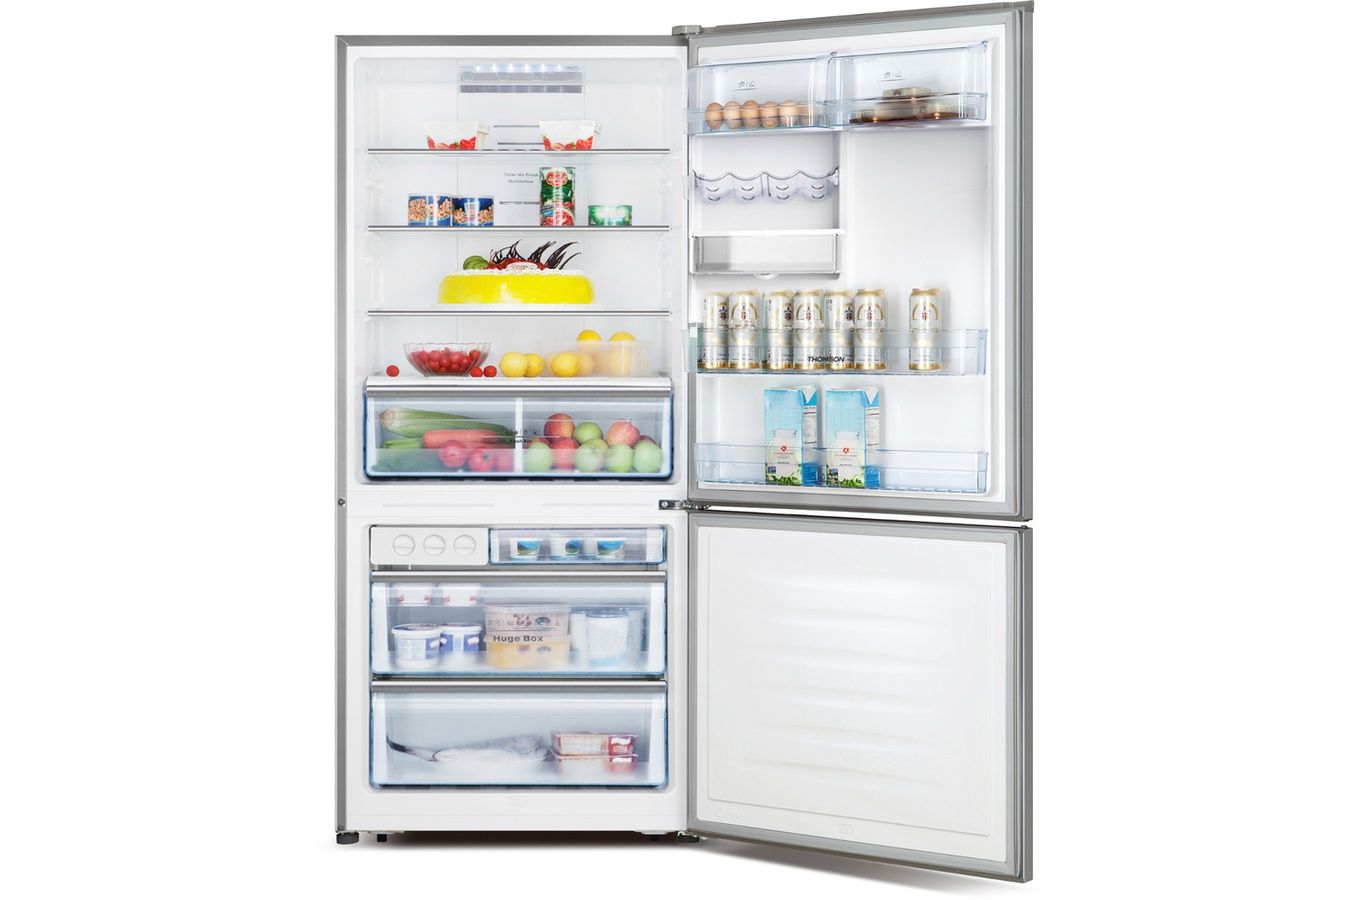 Refrigerateur congelateur en bas Thomson CTH 460 XL SS INOX VCM pas cher - Réfrigérateur Darty